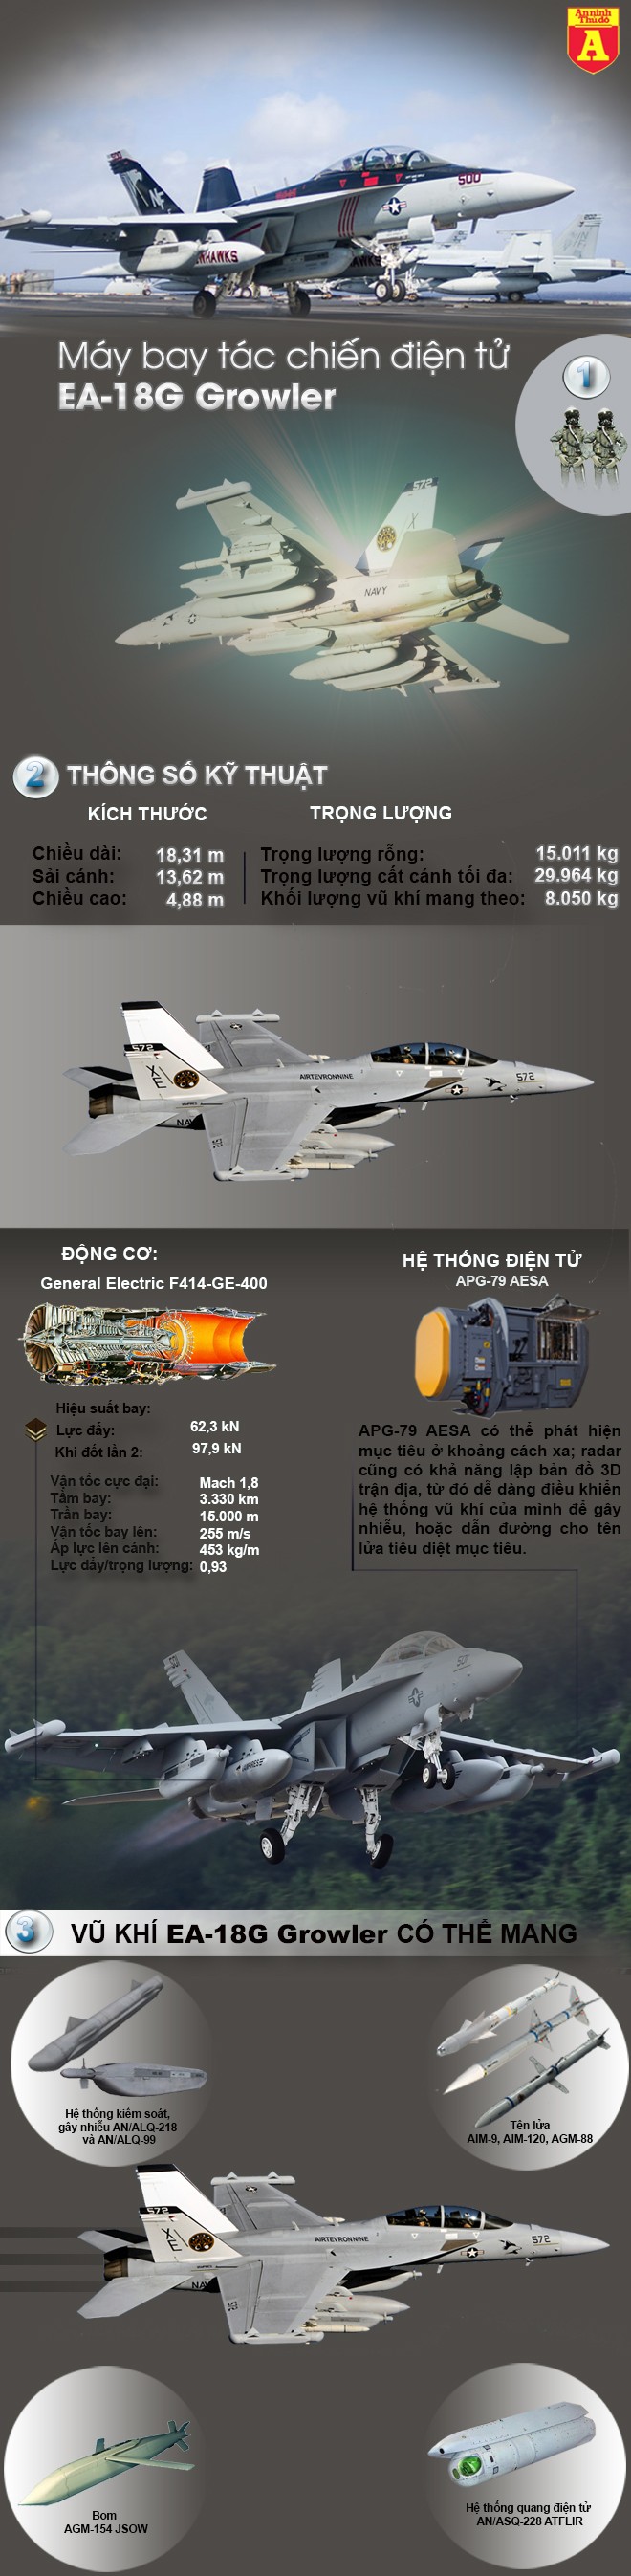 [Infographic] Đây là loại máy bay Mỹ mà Nga- Trung đang thèm khát ảnh 2